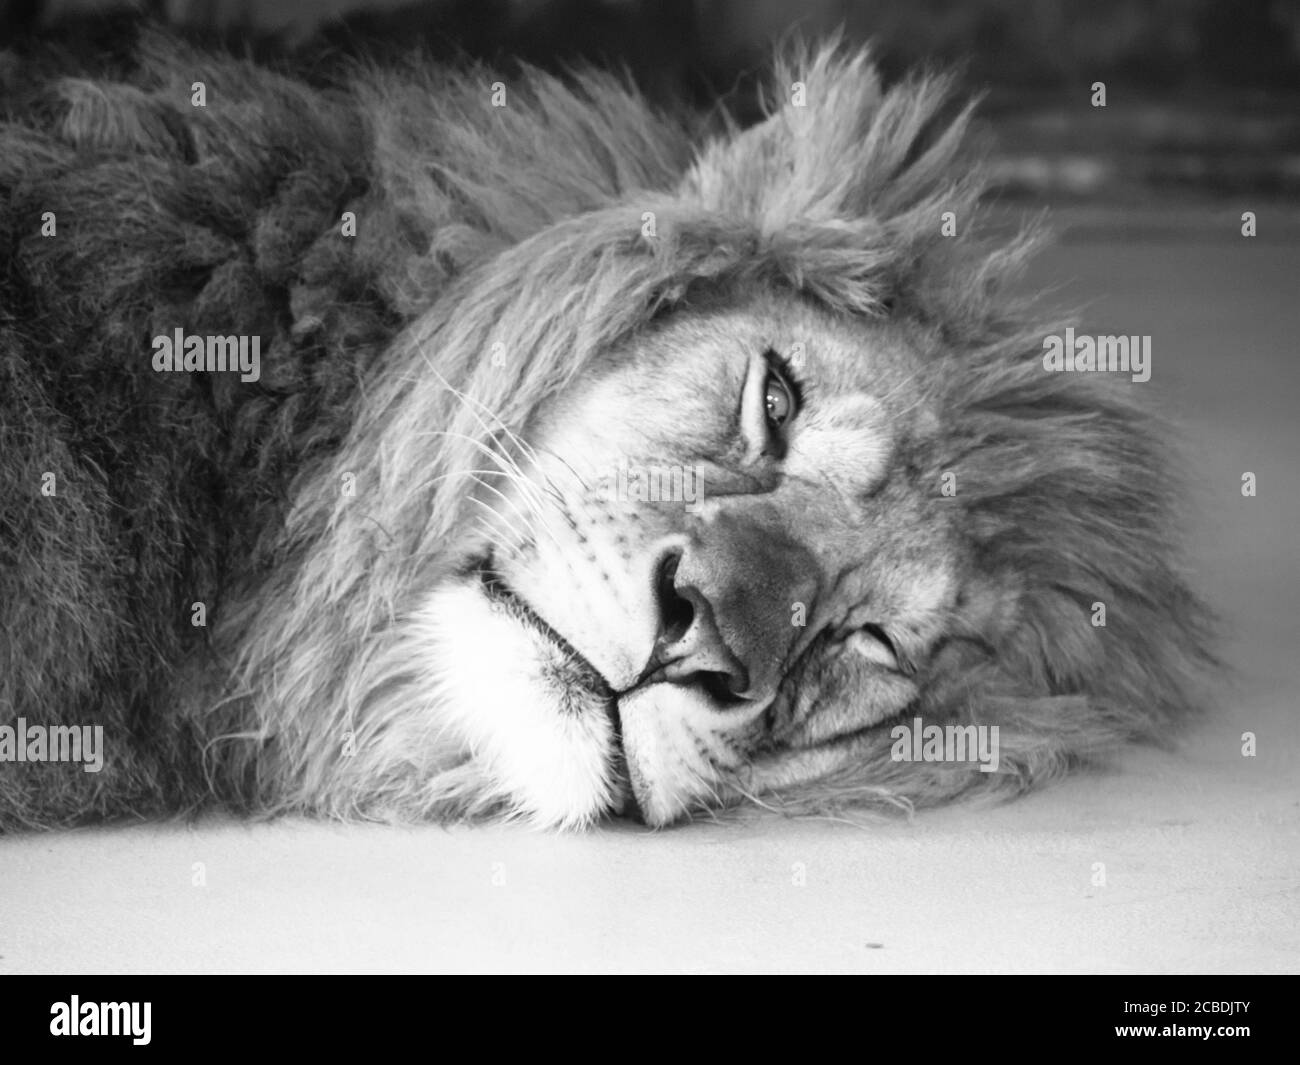 Leone maschio stanco che giace su un terreno con un occhio aperto. Immagine in bianco e nero. Foto Stock